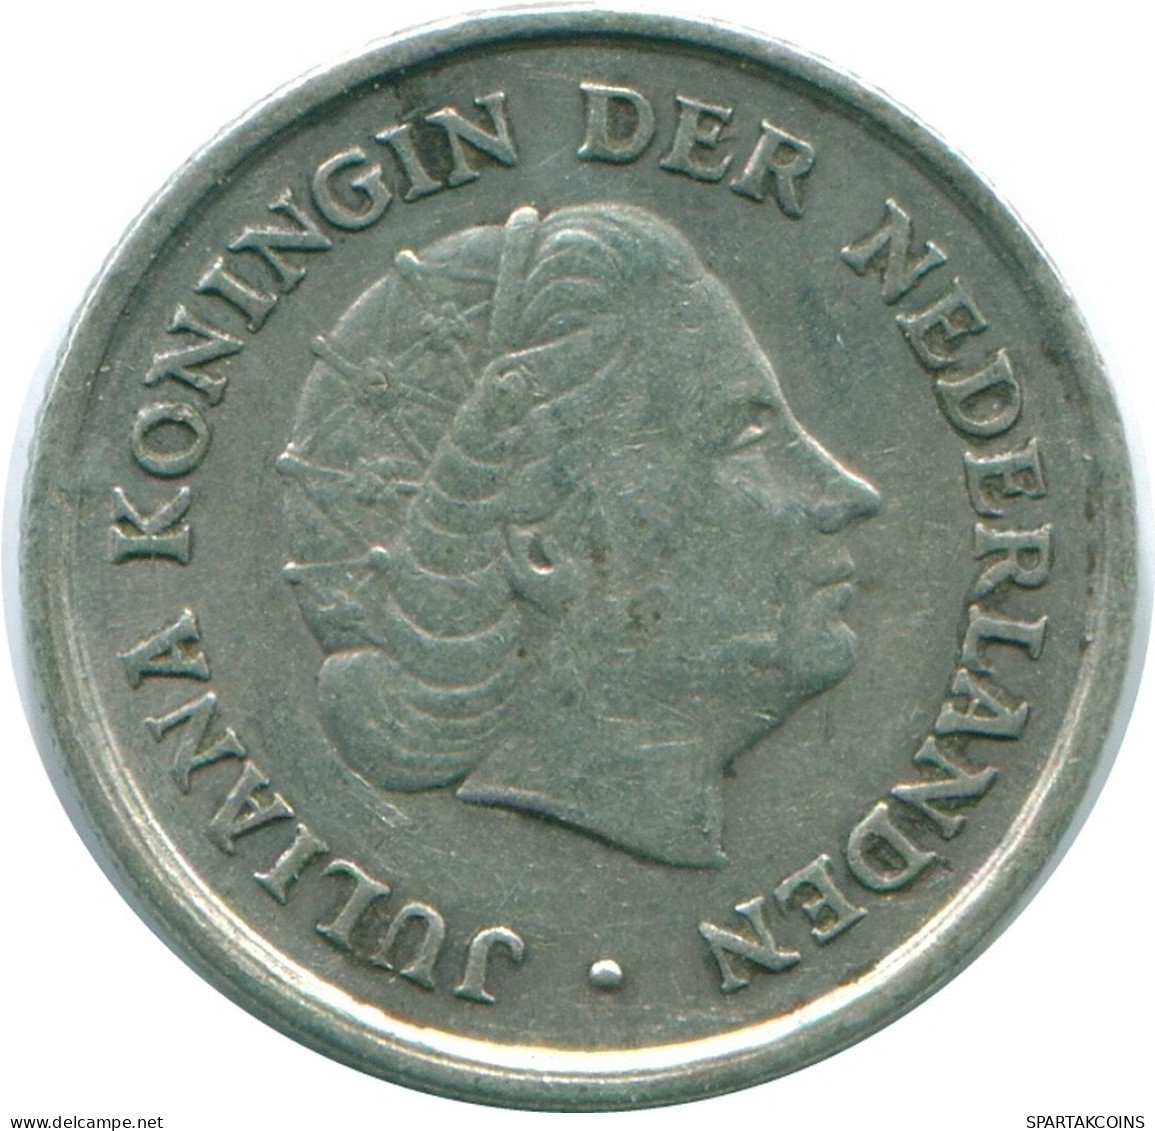 1/10 GULDEN 1966 NIEDERLÄNDISCHE ANTILLEN SILBER Koloniale Münze #NL12827.3.D.A - Niederländische Antillen